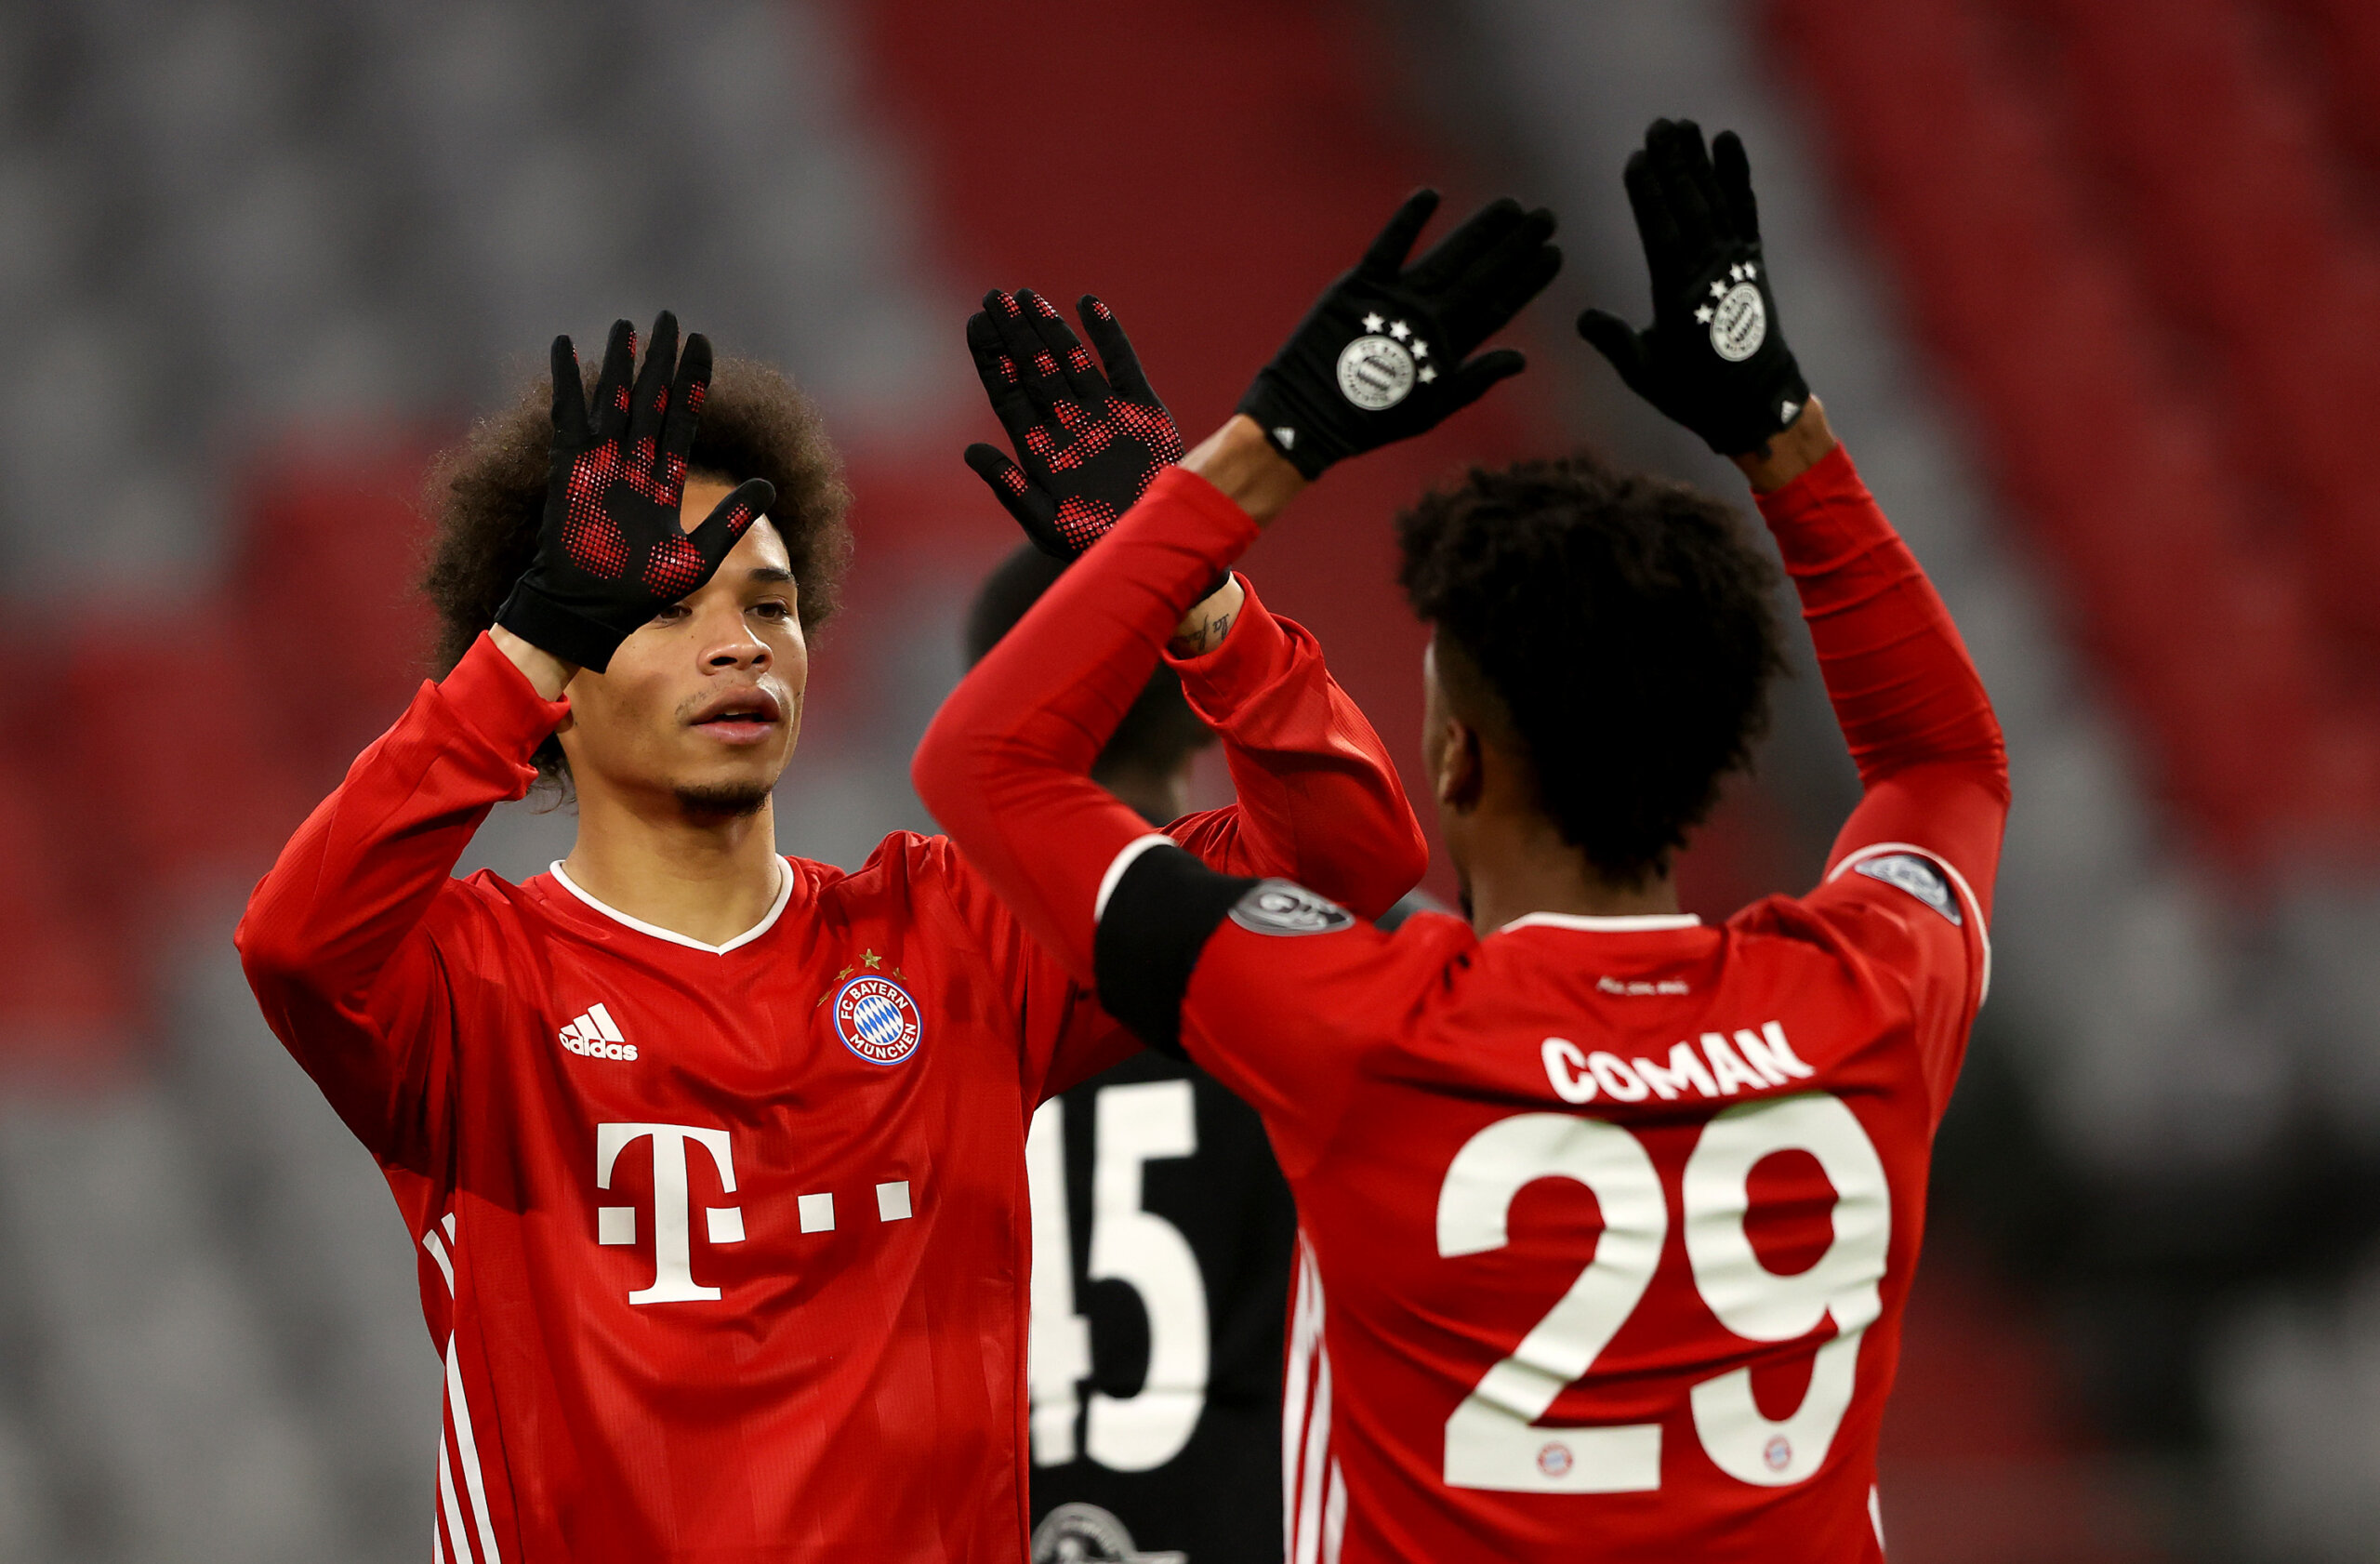 Bayern e City sono, insieme al Barcellona, le uniche squadre a punteggio pieno nei gironi di Champions. Photo Alexander Hassenstein via Getty Images